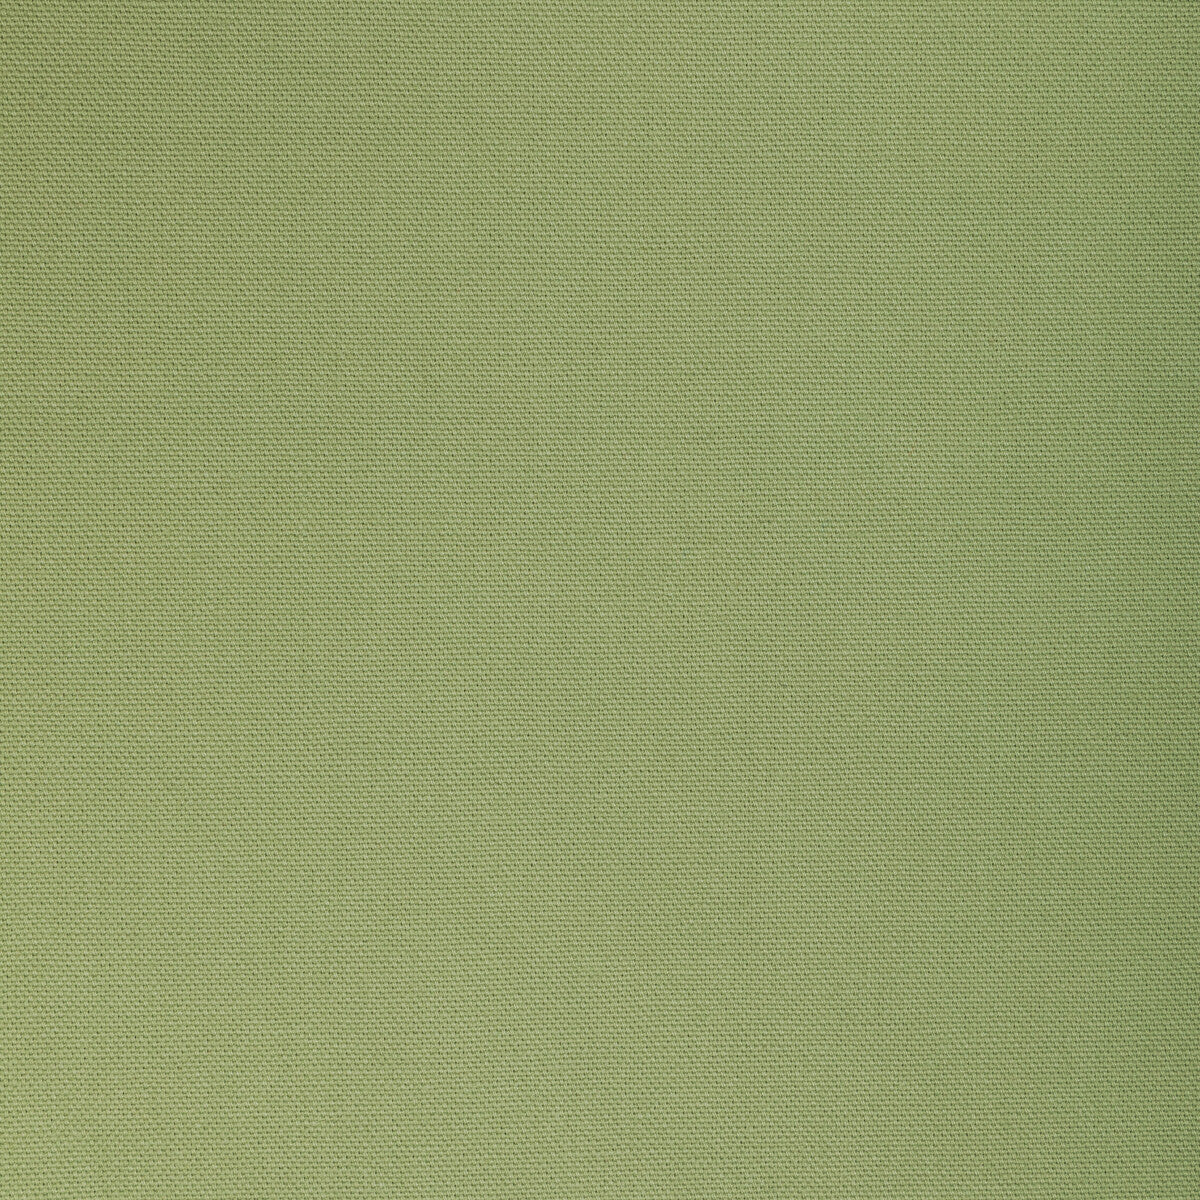 Kravet Basics fabric in 36656-30 color - pattern 36656.30.0 - by Kravet Basics